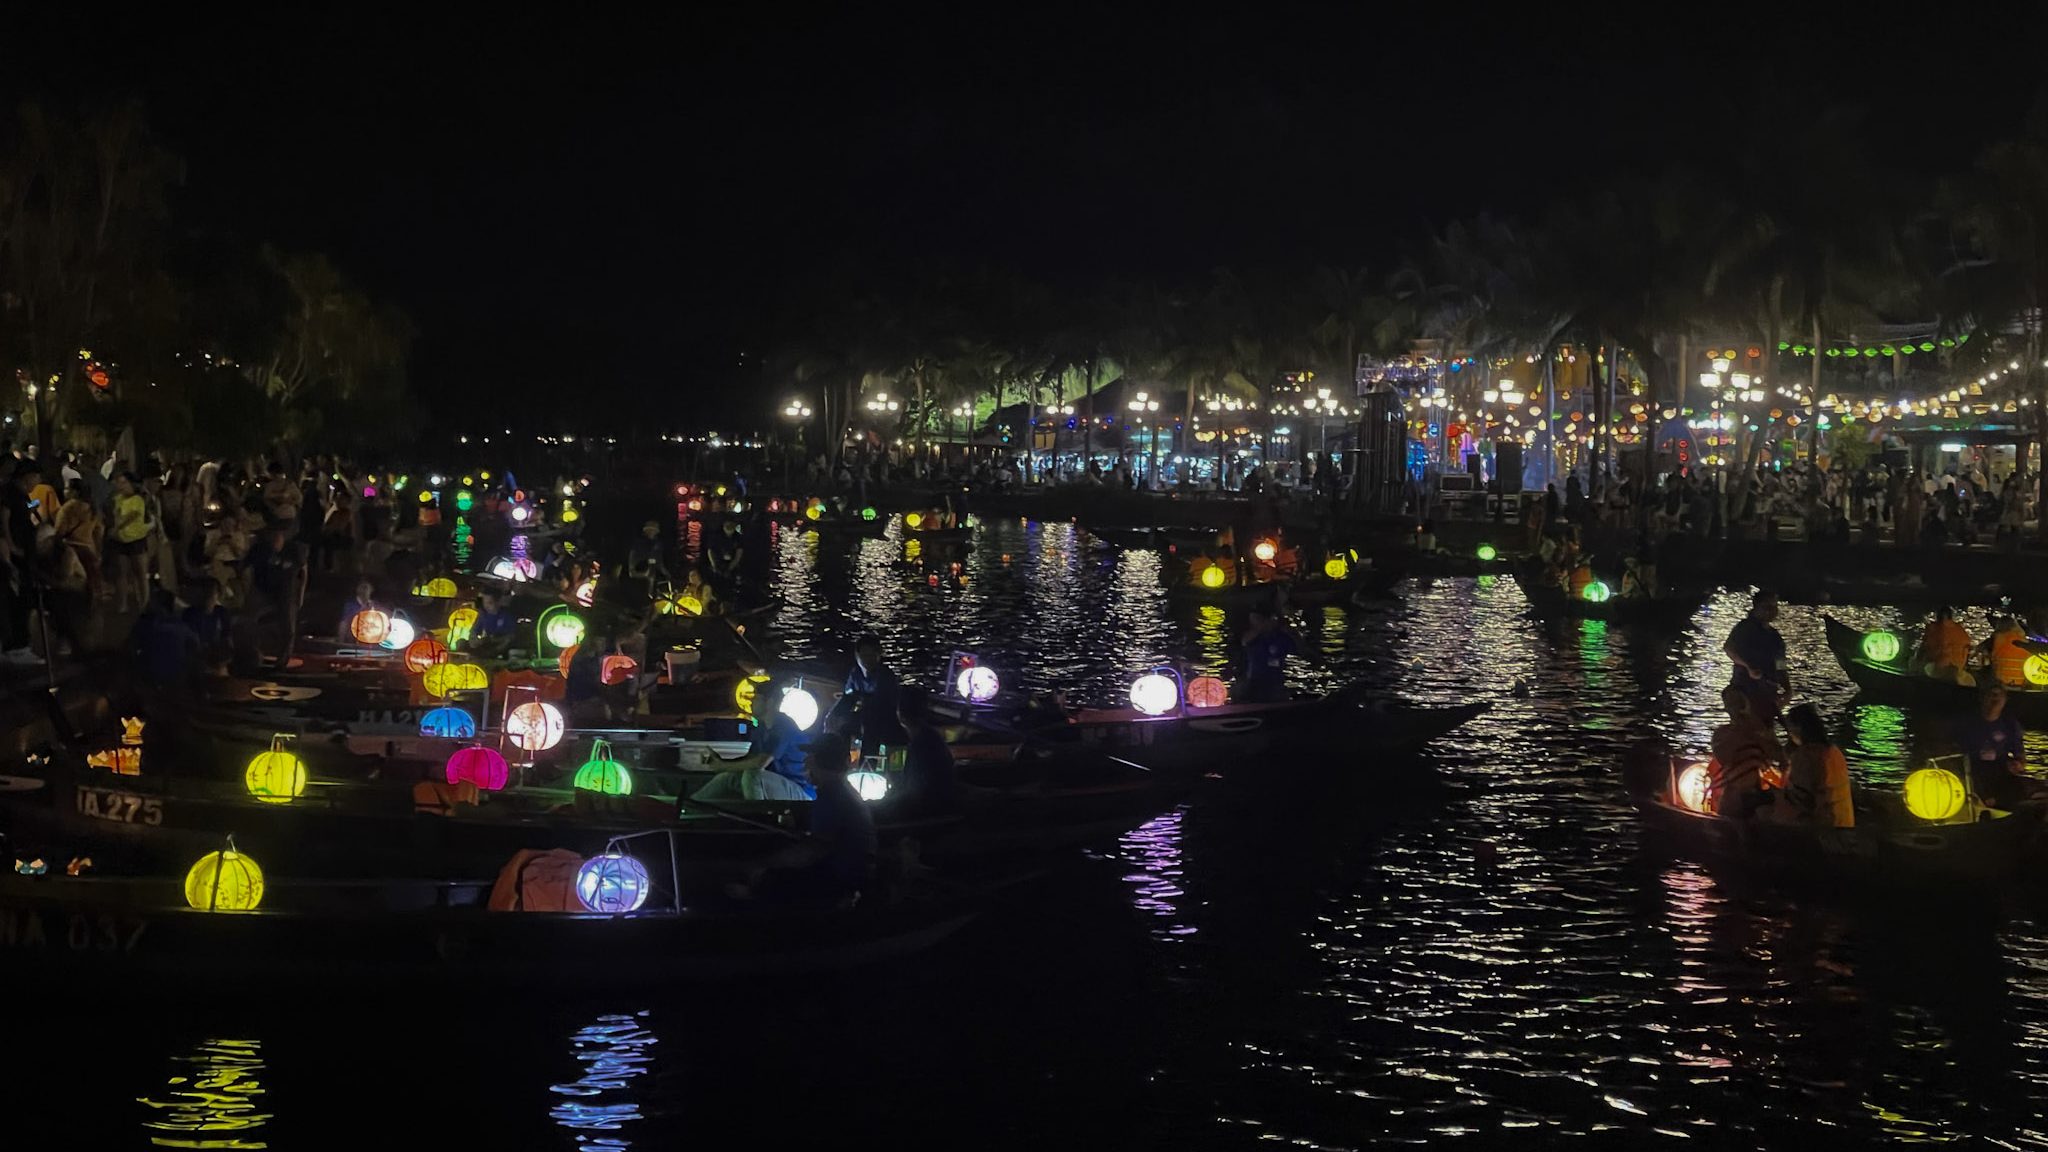 Lanterns in Hoi An at night